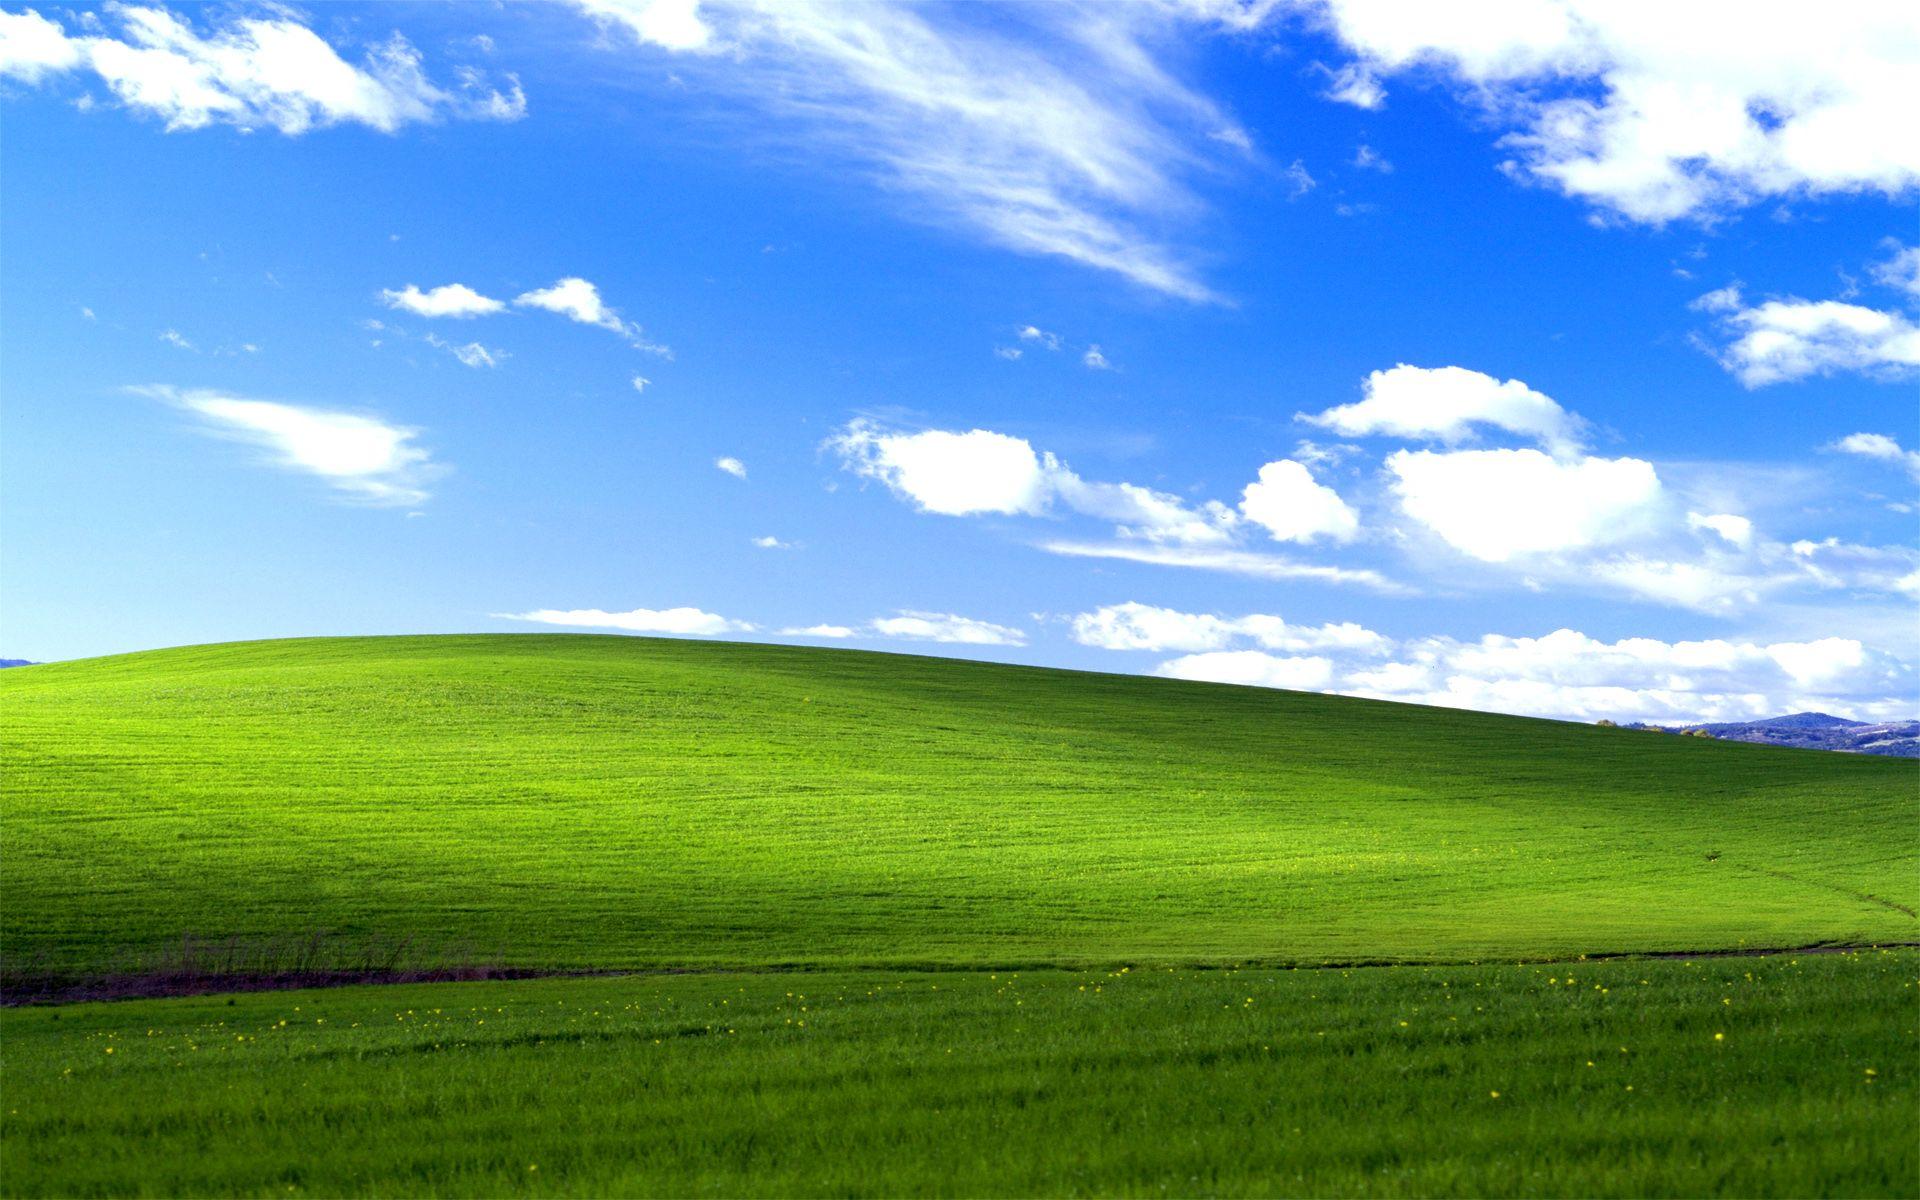 Microsoft Windows XP là một trong những hệ điều hành được nhiều người sử dụng trong quá khứ. Với những tính năng ưu việt, giao diện thân thiện, Windows XP đã trở thành một biểu tượng của công nghệ. Hãy cùng nhìn lại các bức ảnh và hiểu tại sao Windows XP lại là lựa chọn hàng đầu của nhiều người.